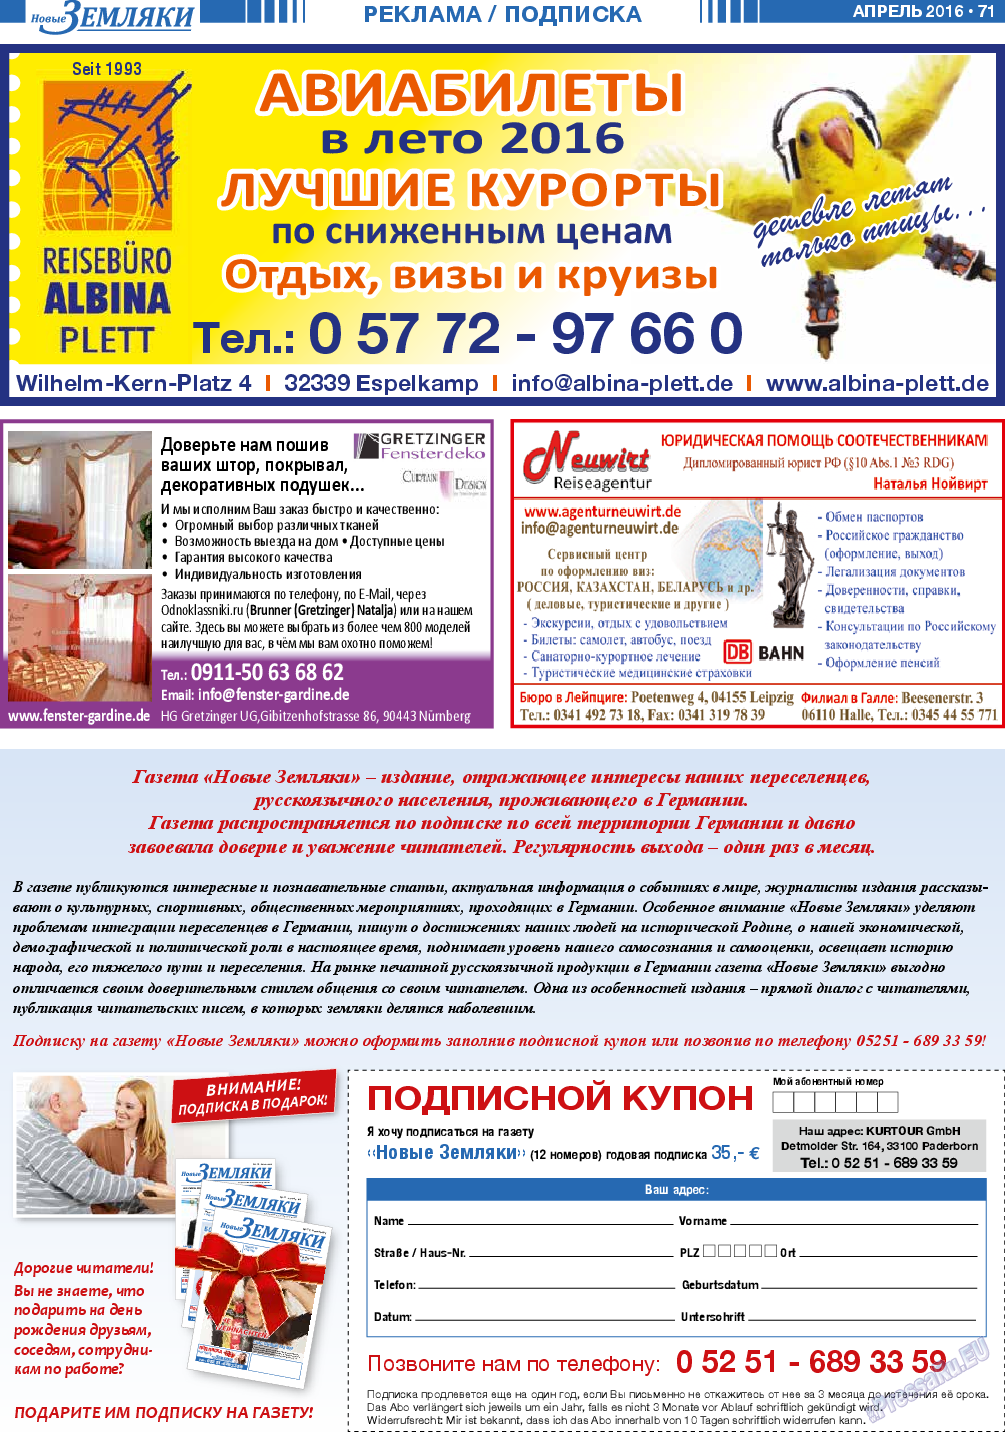 Новые Земляки, газета. 2016 №4 стр.71